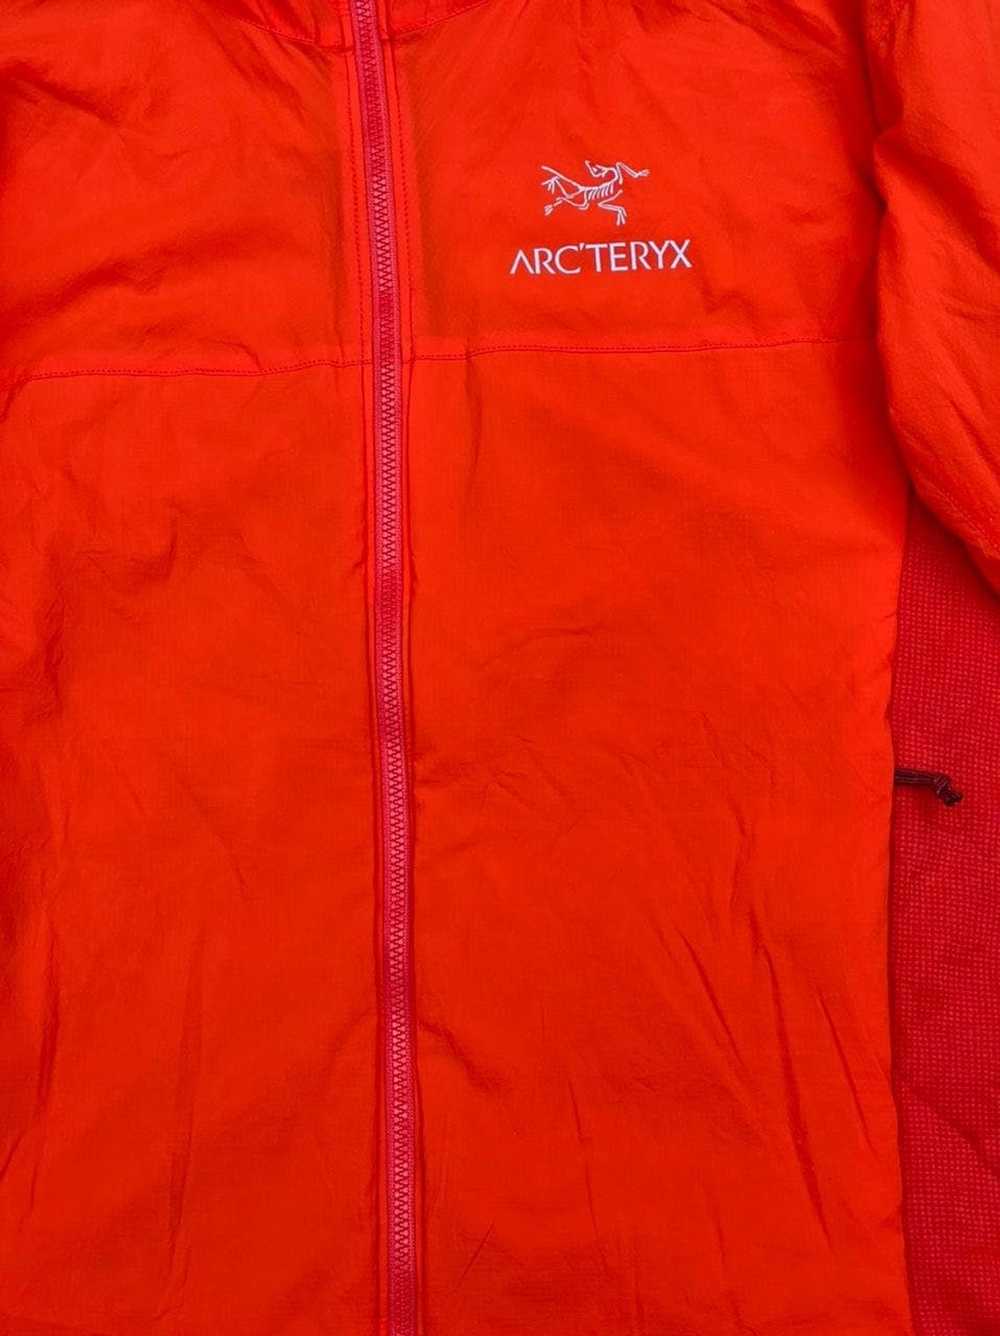 Arc'Teryx Arcteryx Atom LT Hoodie Jacket - image 8